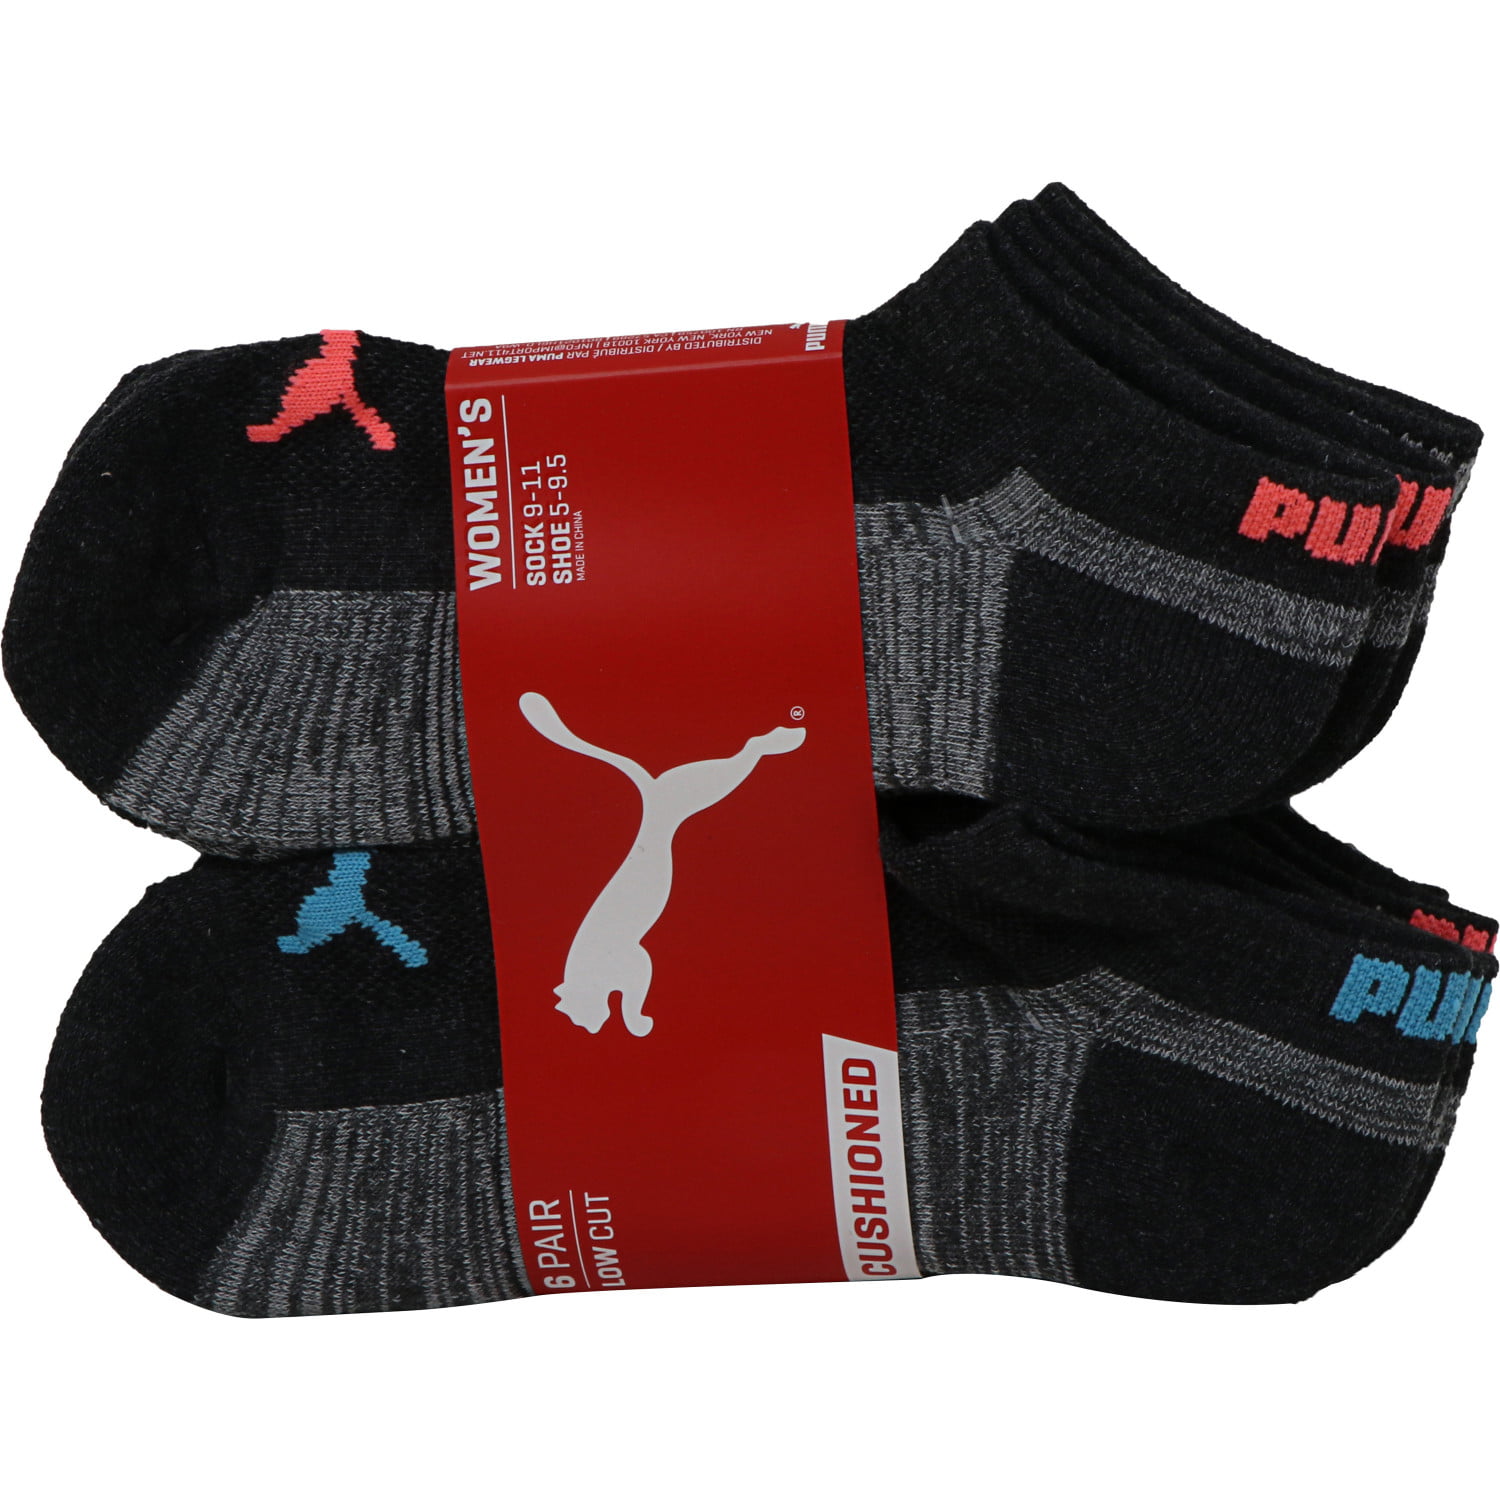 PUMA - Puma Women's 6 Pack Low-Cut Sport Socks, Gray/Multi, Sock Size 9-11 - Walmart.com